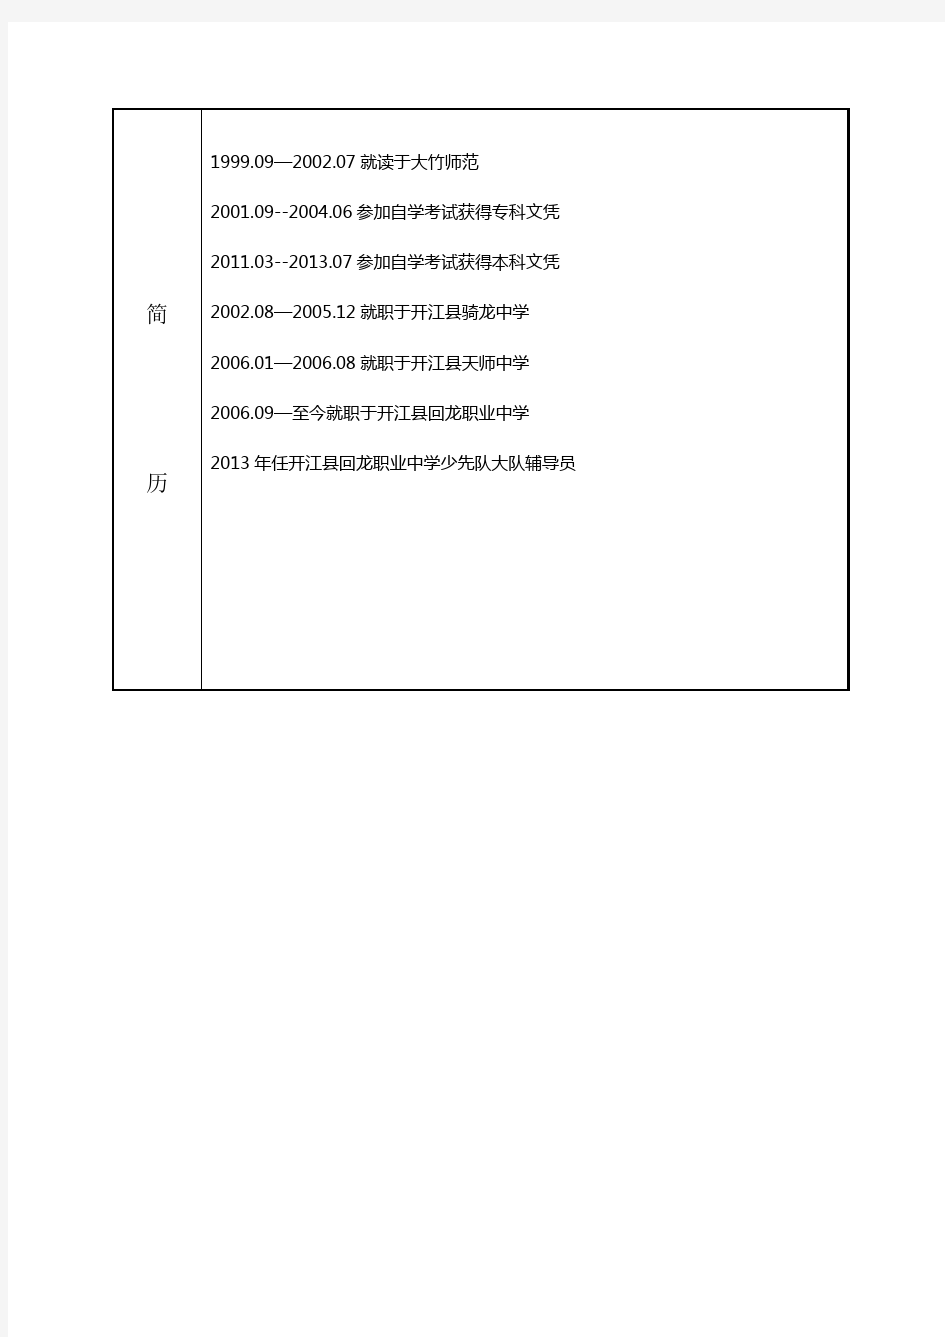 全国干部人事档案专项审核专用表(张永惠)